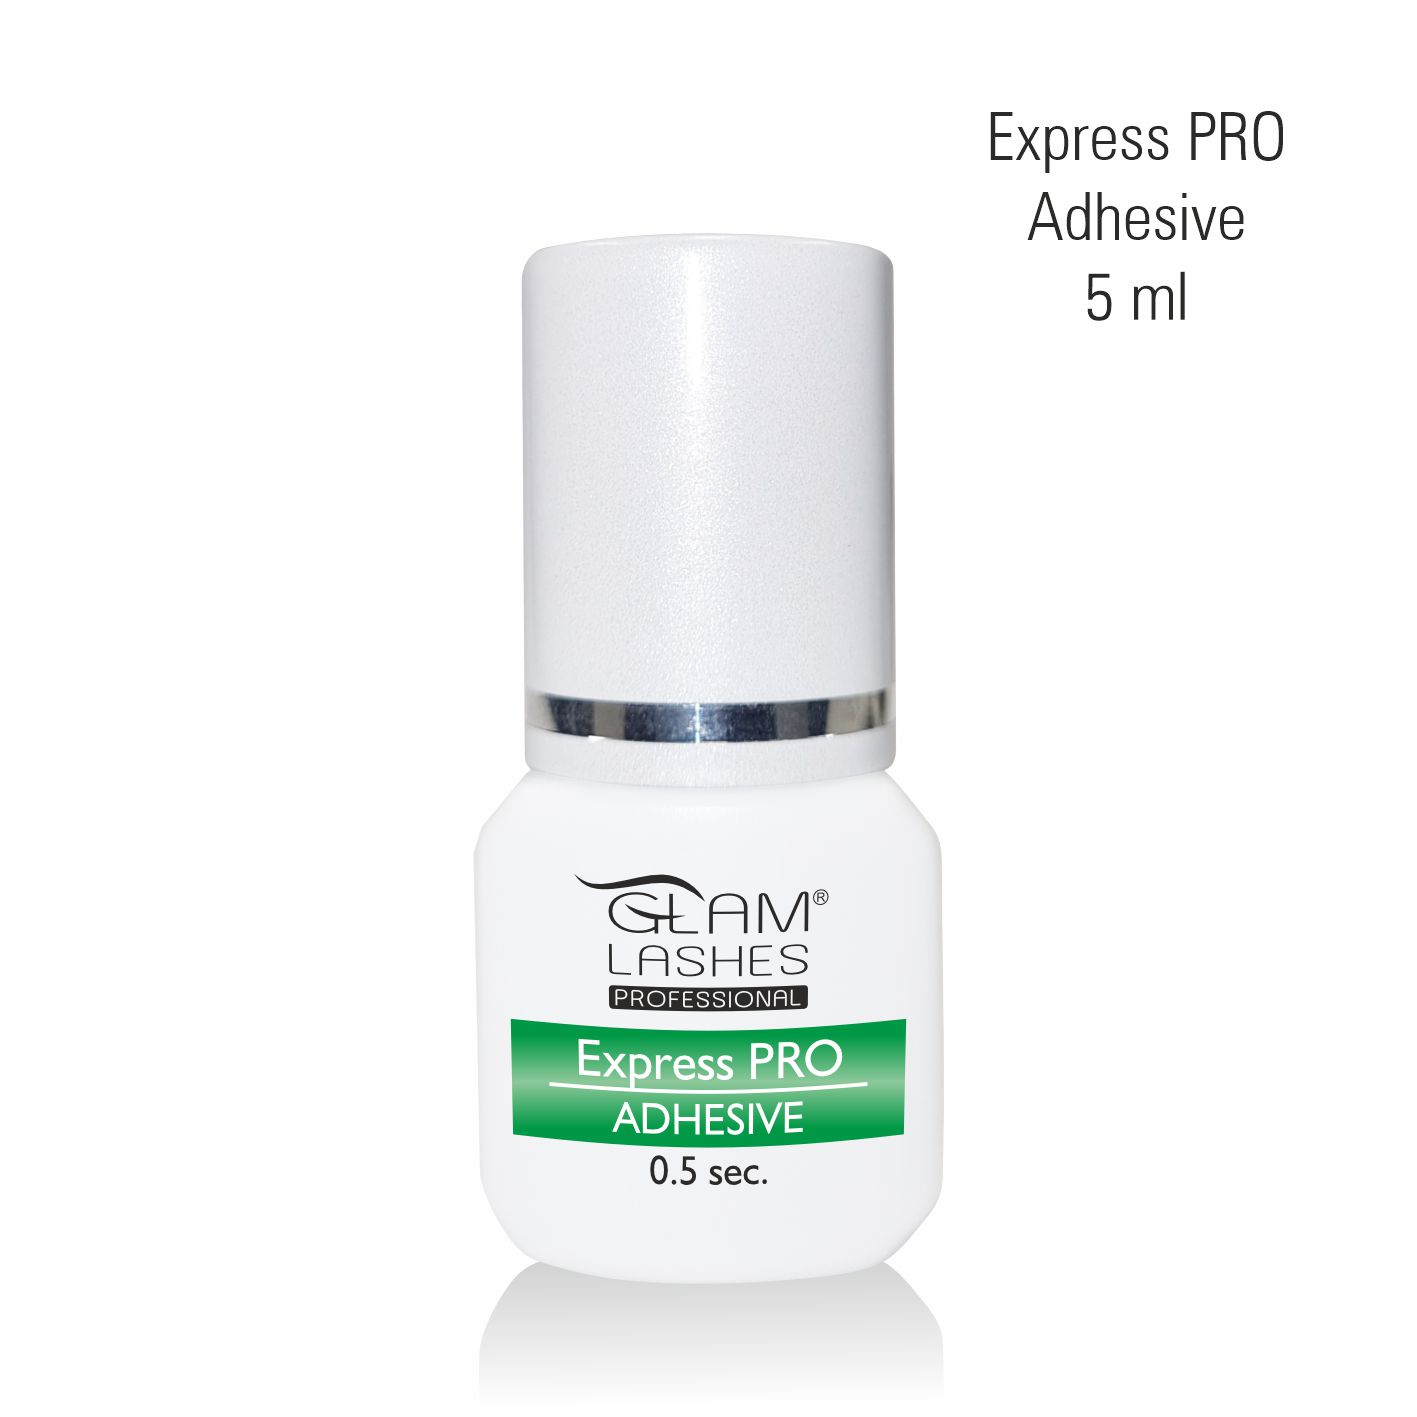 GlamLashes Express PRO Adhesive Eyelash Glue